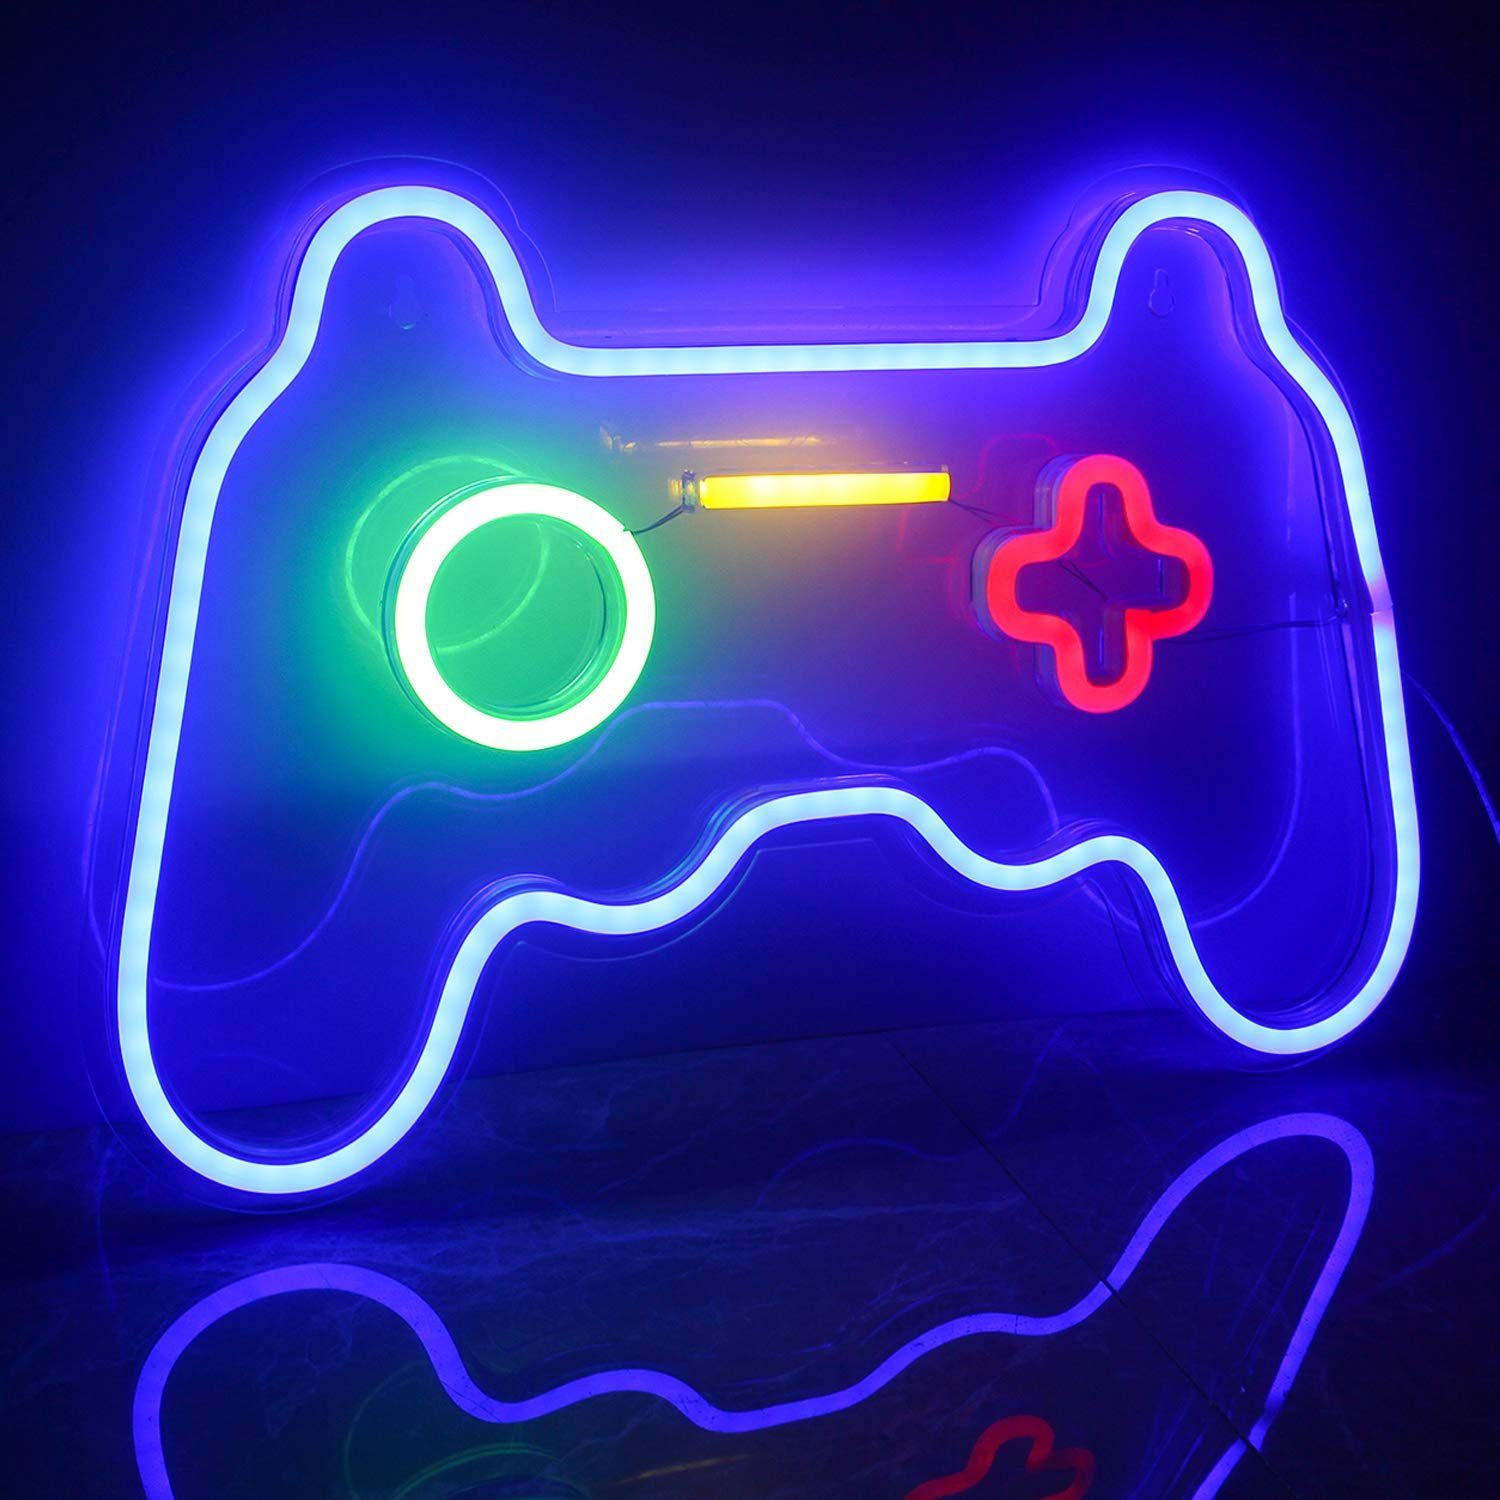 https://i.otto.de/i/otto/ee569bd0-c2c2-4768-b135-291306fcc5f5/aoucheni-led-dekolicht-gaming-neon-schild-neonlicht-fuer-gaming-room-deko-dekor-led-fest-integriert-farbe-haengeleuchte.jpg?$formatz$